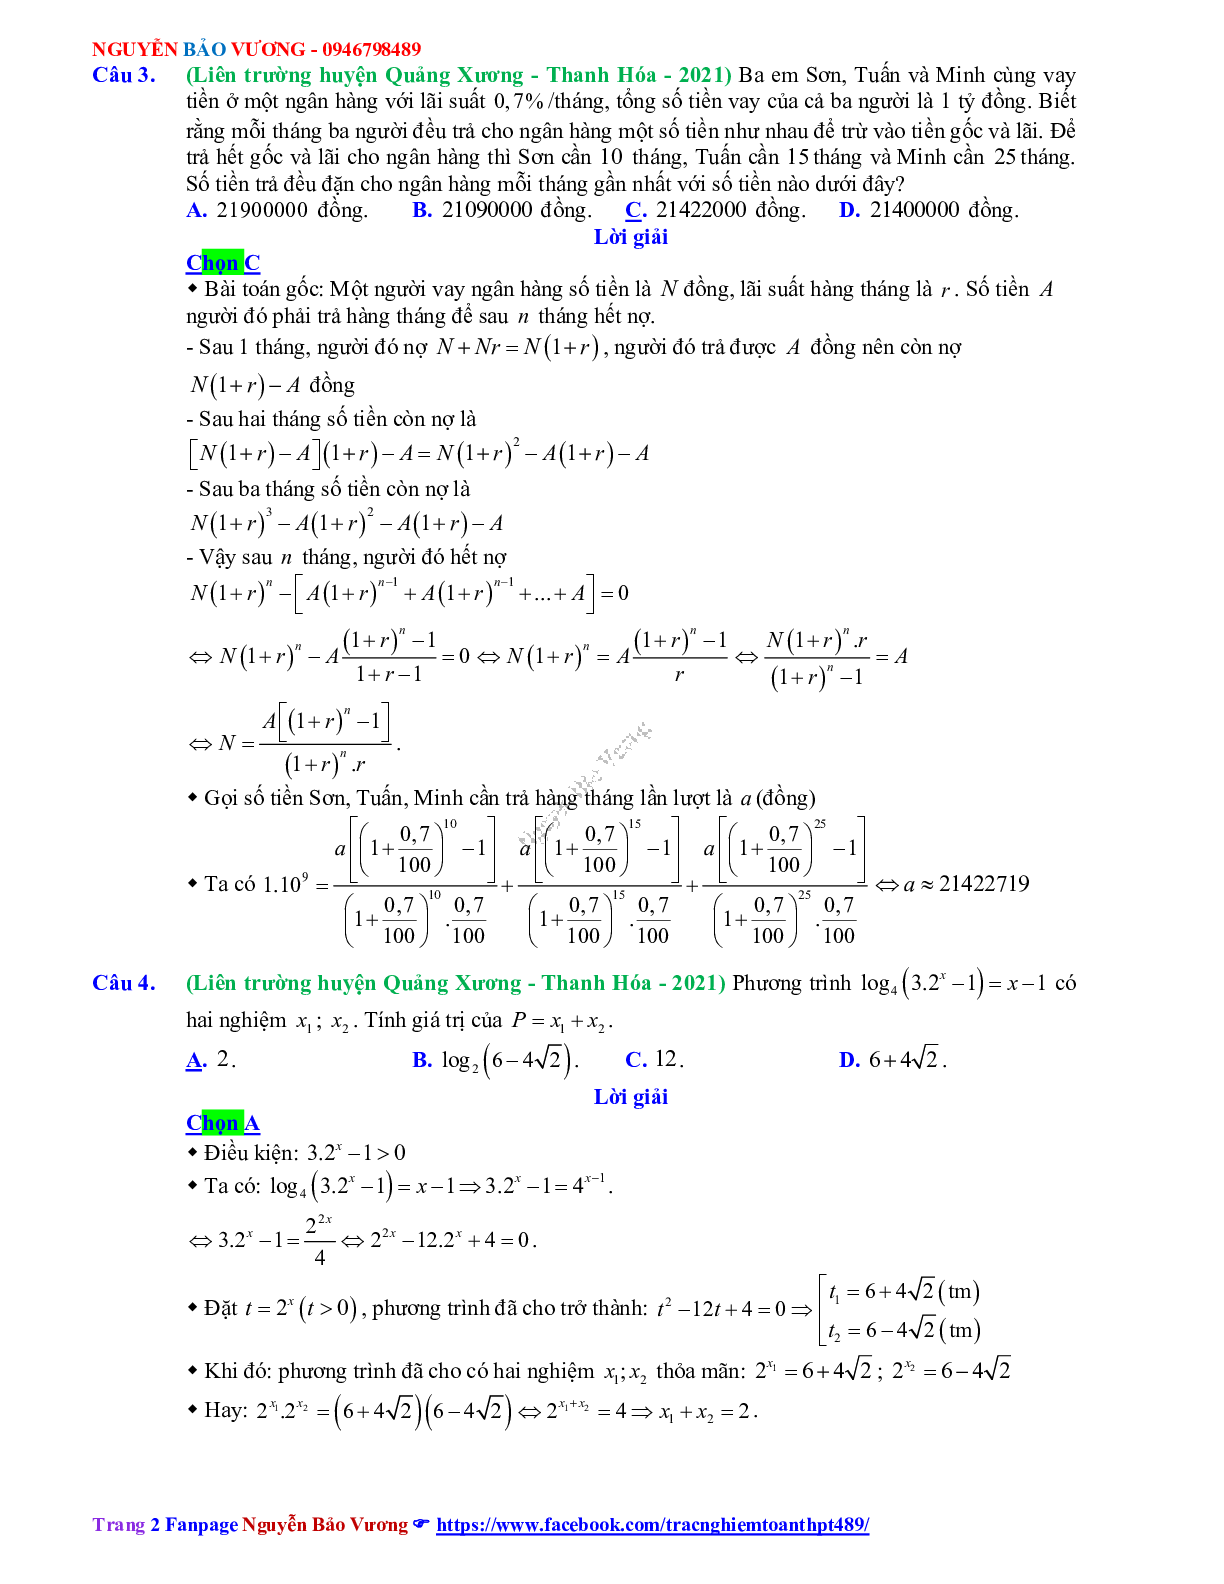 Trắc nghiệm Ôn thi THPT QG Toán 12: Đáp án mũ - lũy thừa - logarit mức độ vận dụng (trang 2)